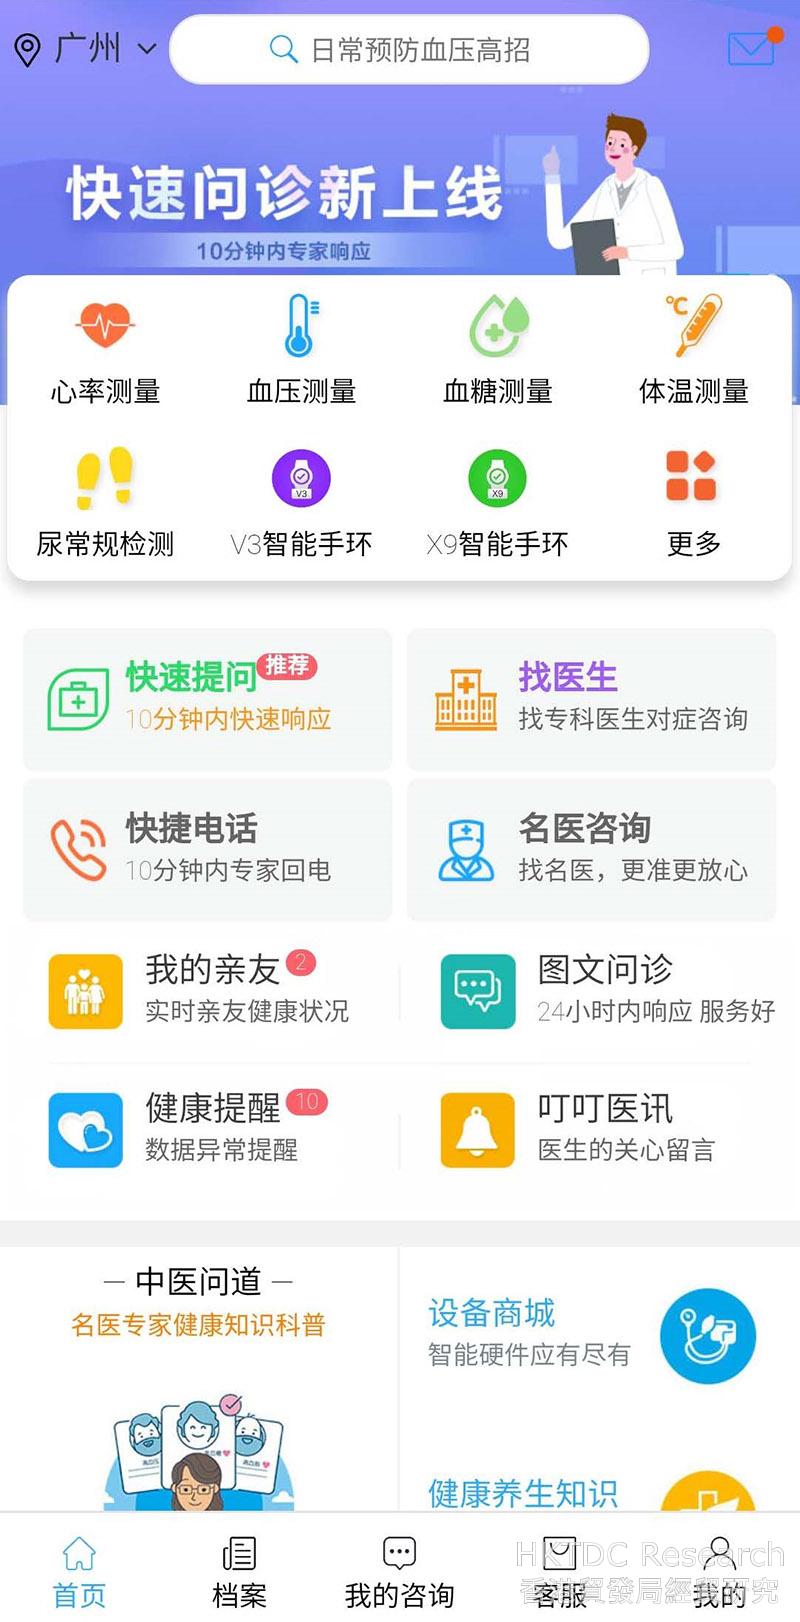 Photo: Yi Jia Xun’s user interface